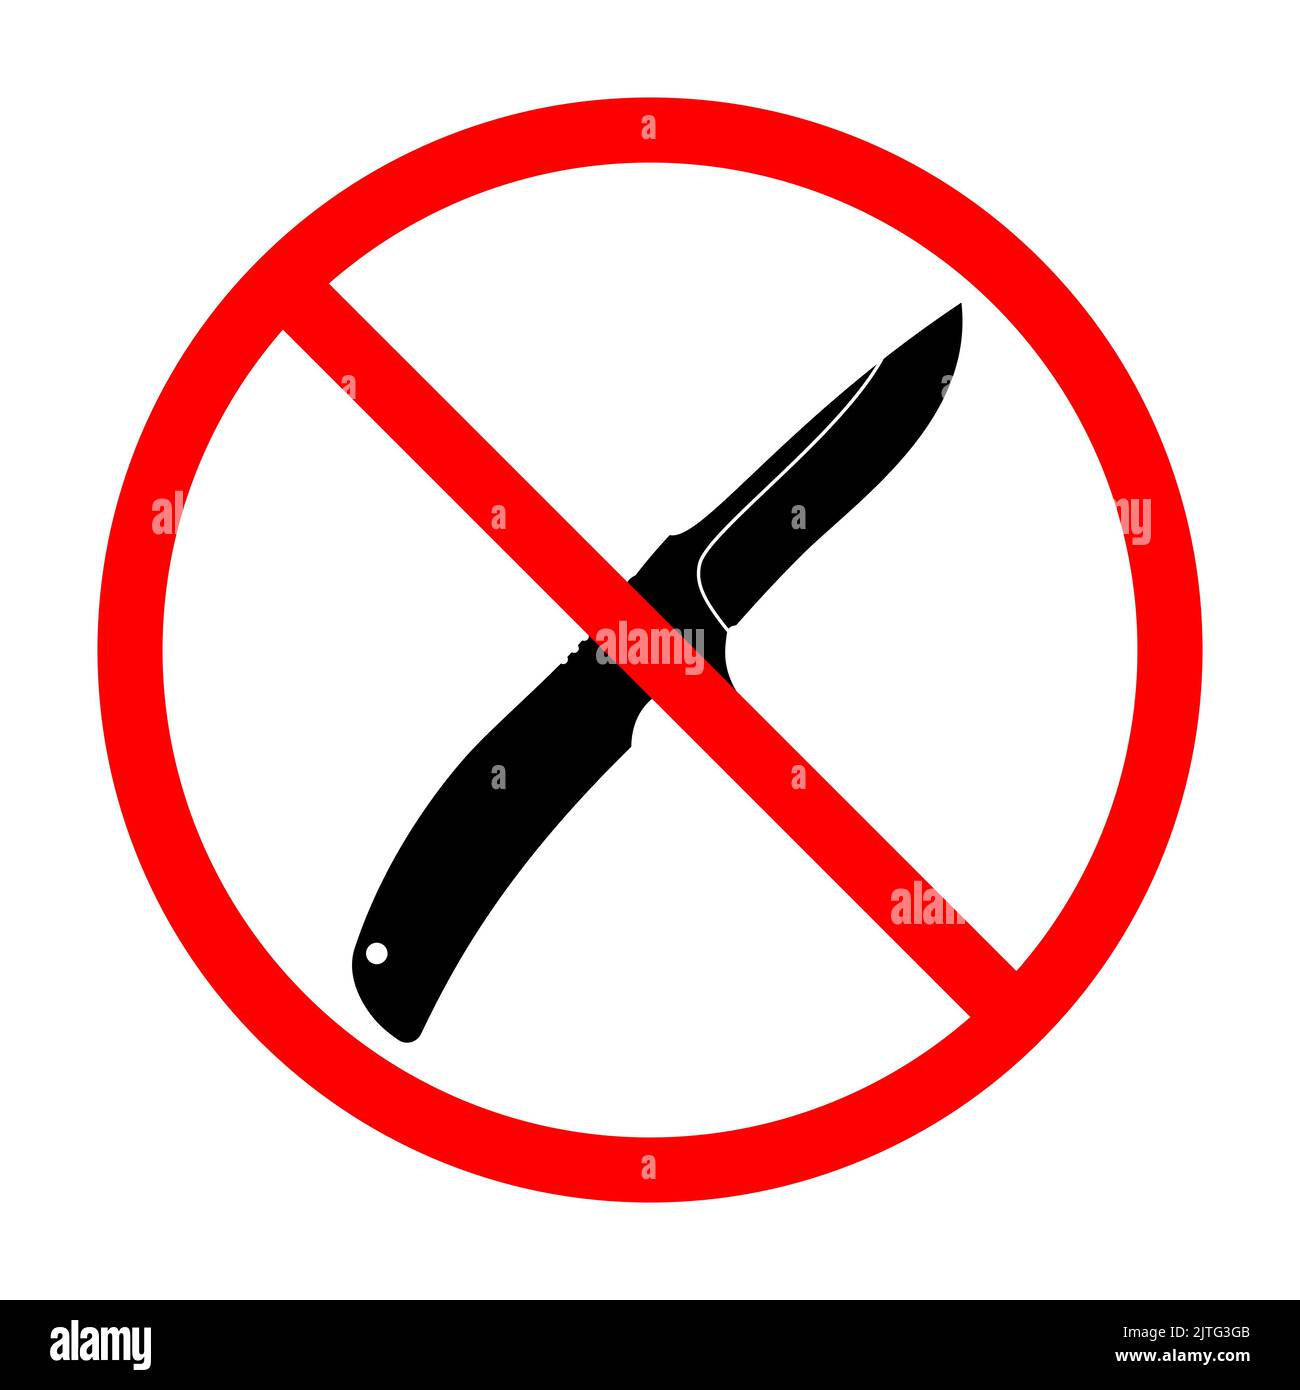 Kein Messer-Schild. Messer Verbot Schild. Gefährliche Waffe. Verbotsschild.  Vektorgrafik.V Stock-Vektorgrafik - Alamy